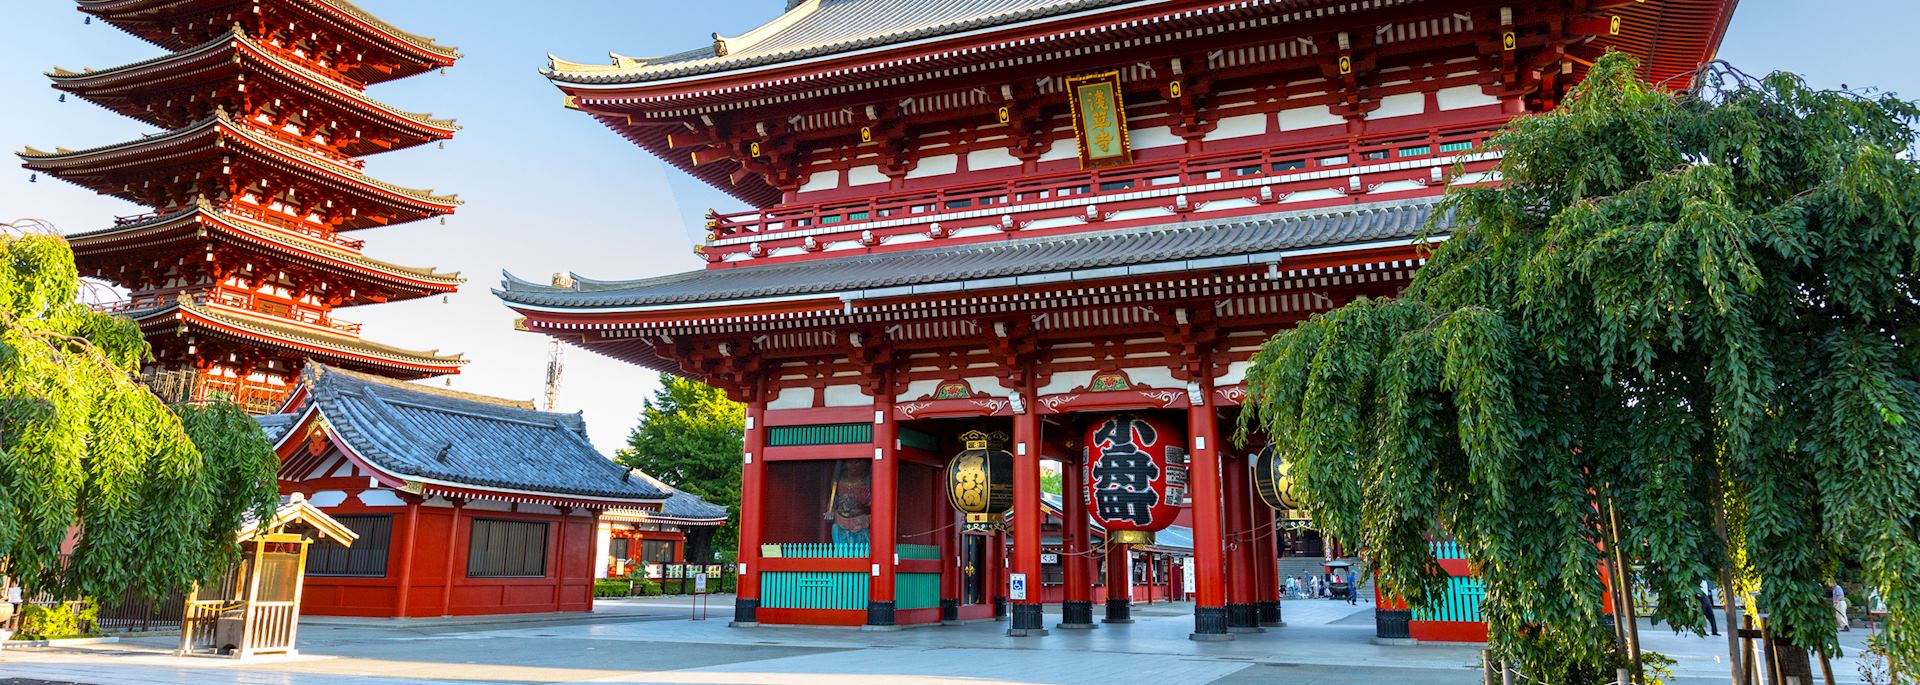 Asakusa Shrine, Tokyo